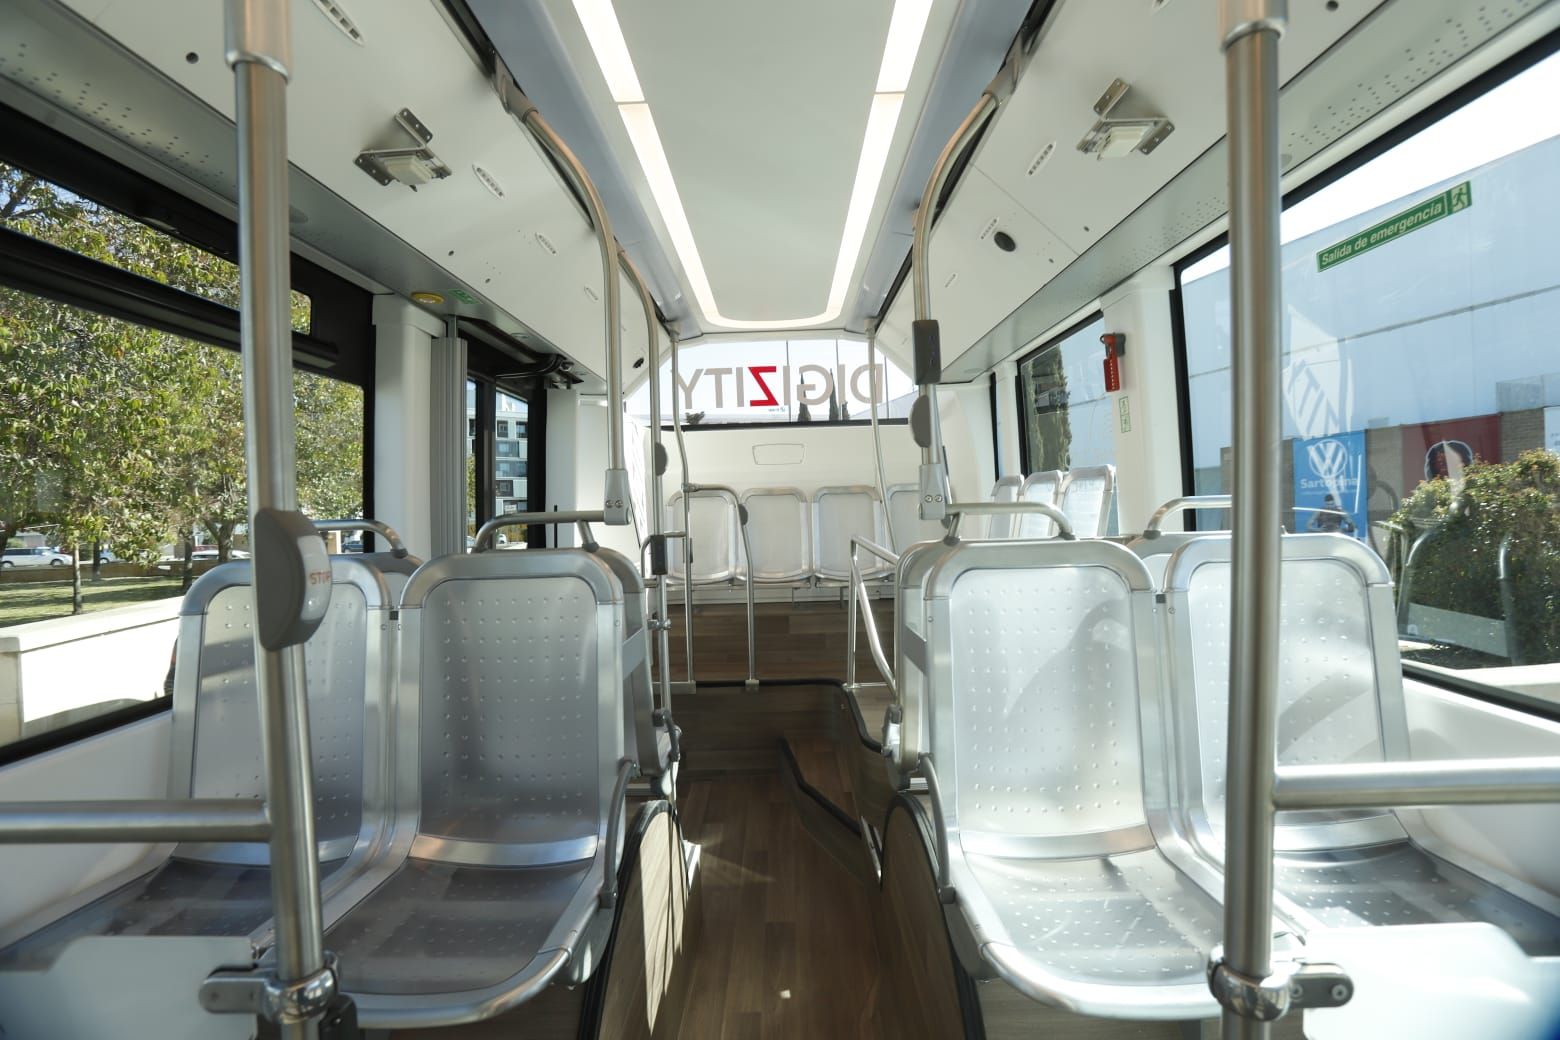 Así es el primer autobús autónomo que ya circula por Zaragoza